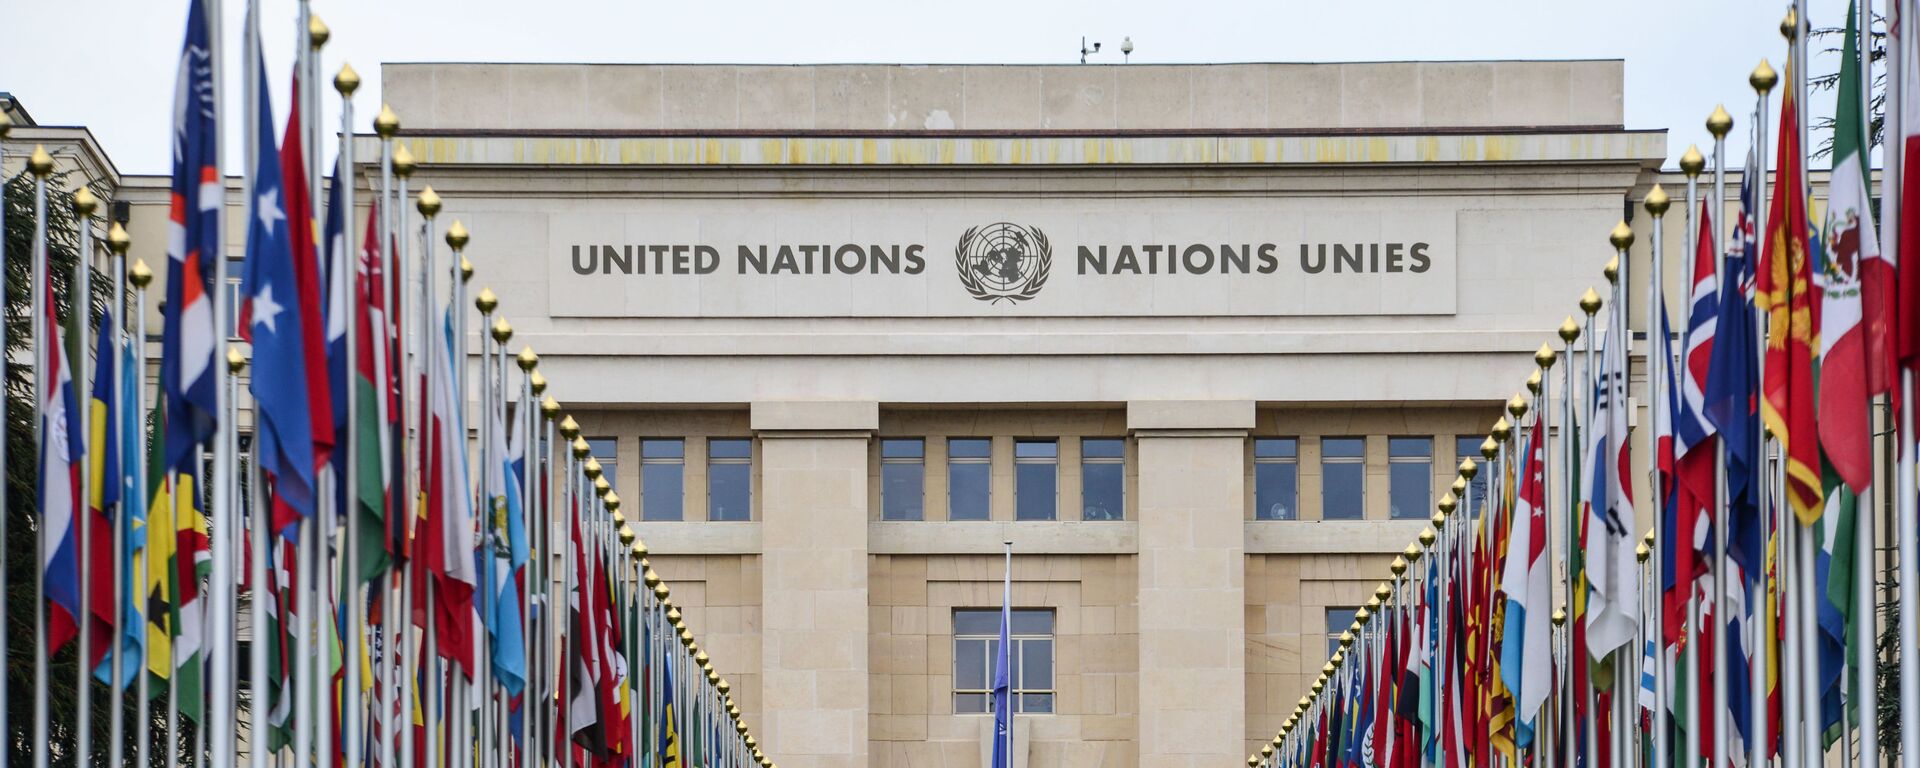 Аллея флагов возле здания Организации Объединённых Наций (ООН) в Женеве - Sputnik Azərbaycan, 1920, 02.02.2021